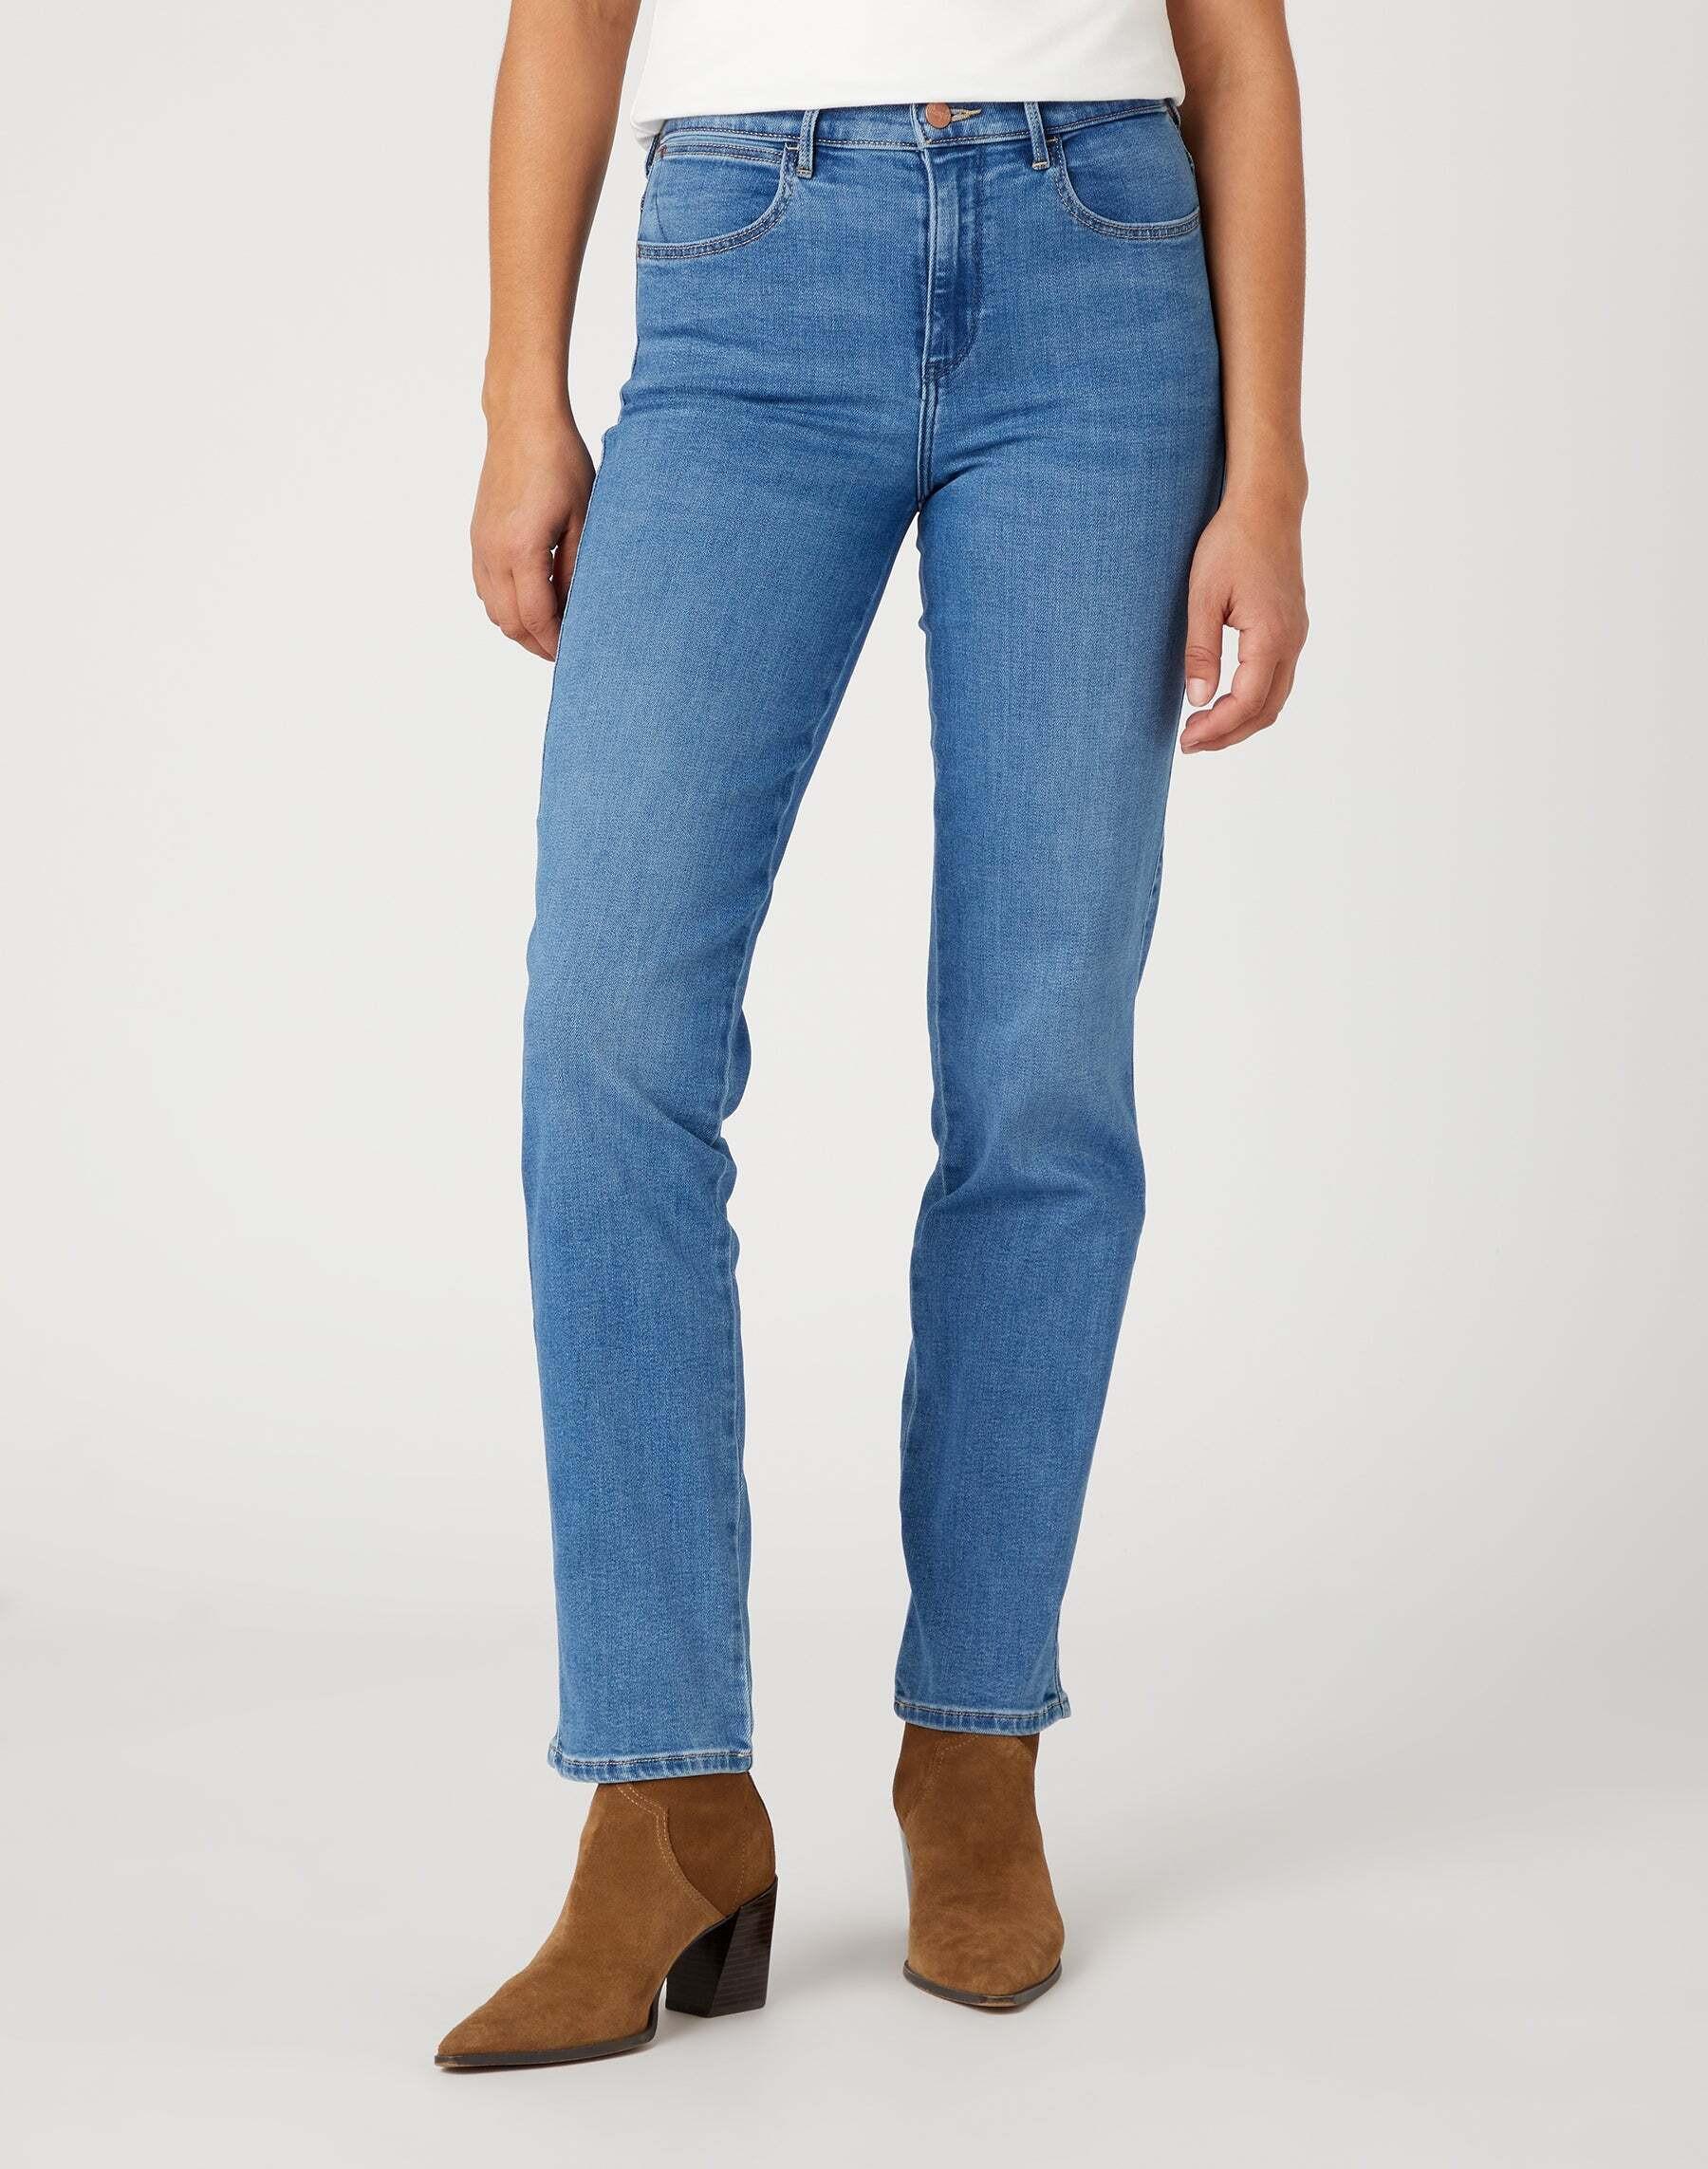 Jeans Straight Damen Hellblau L30/W30 von Wrangler